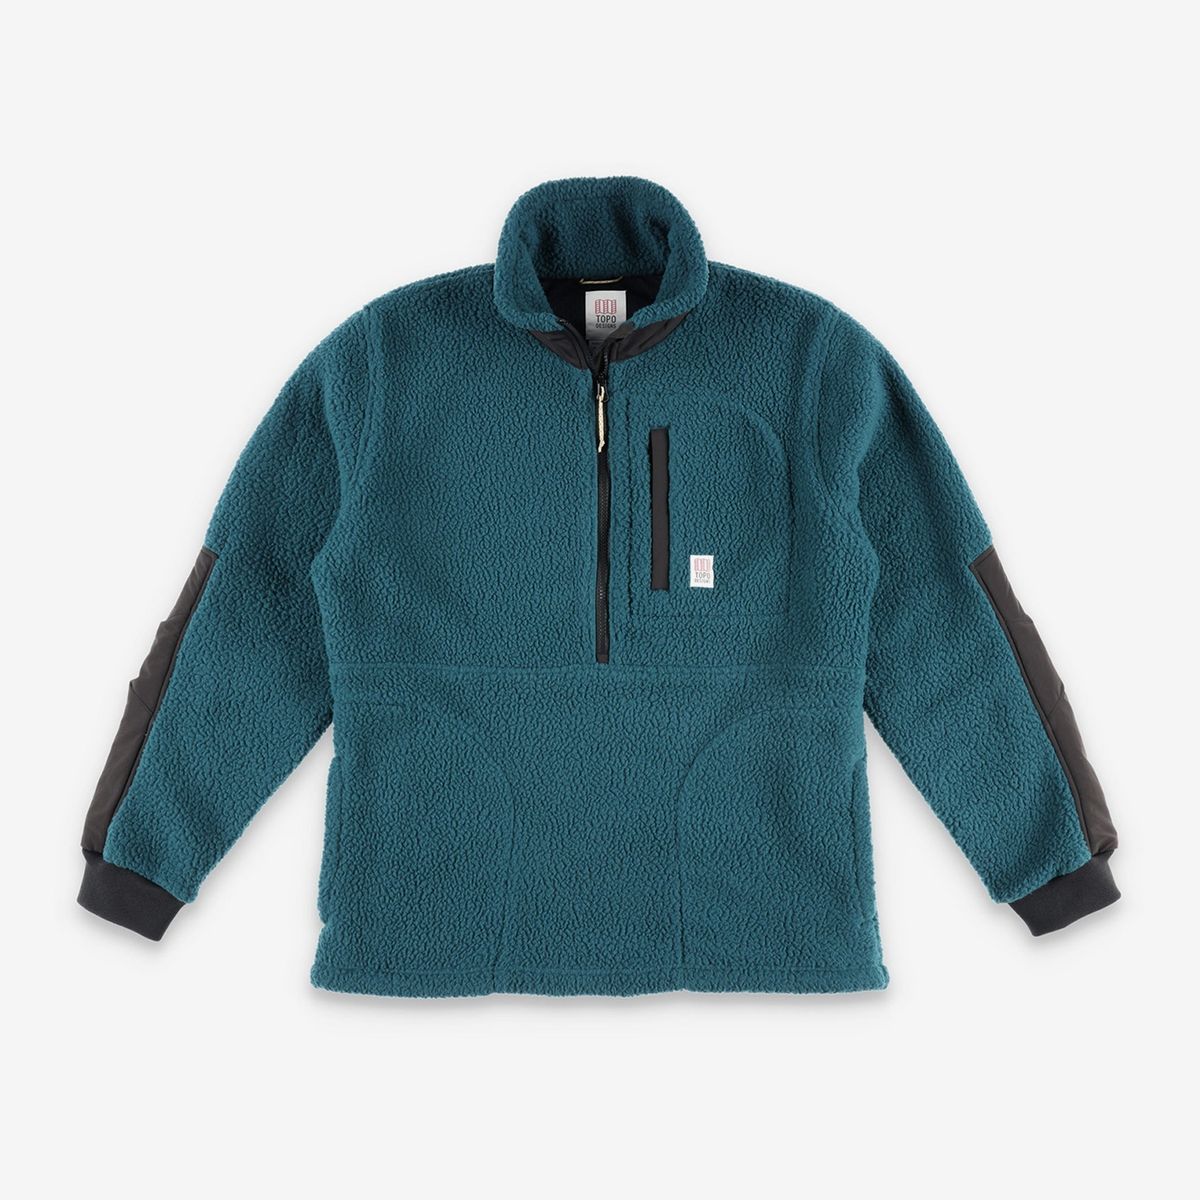 Topo Designs Men's Mountain Fleece Pullover